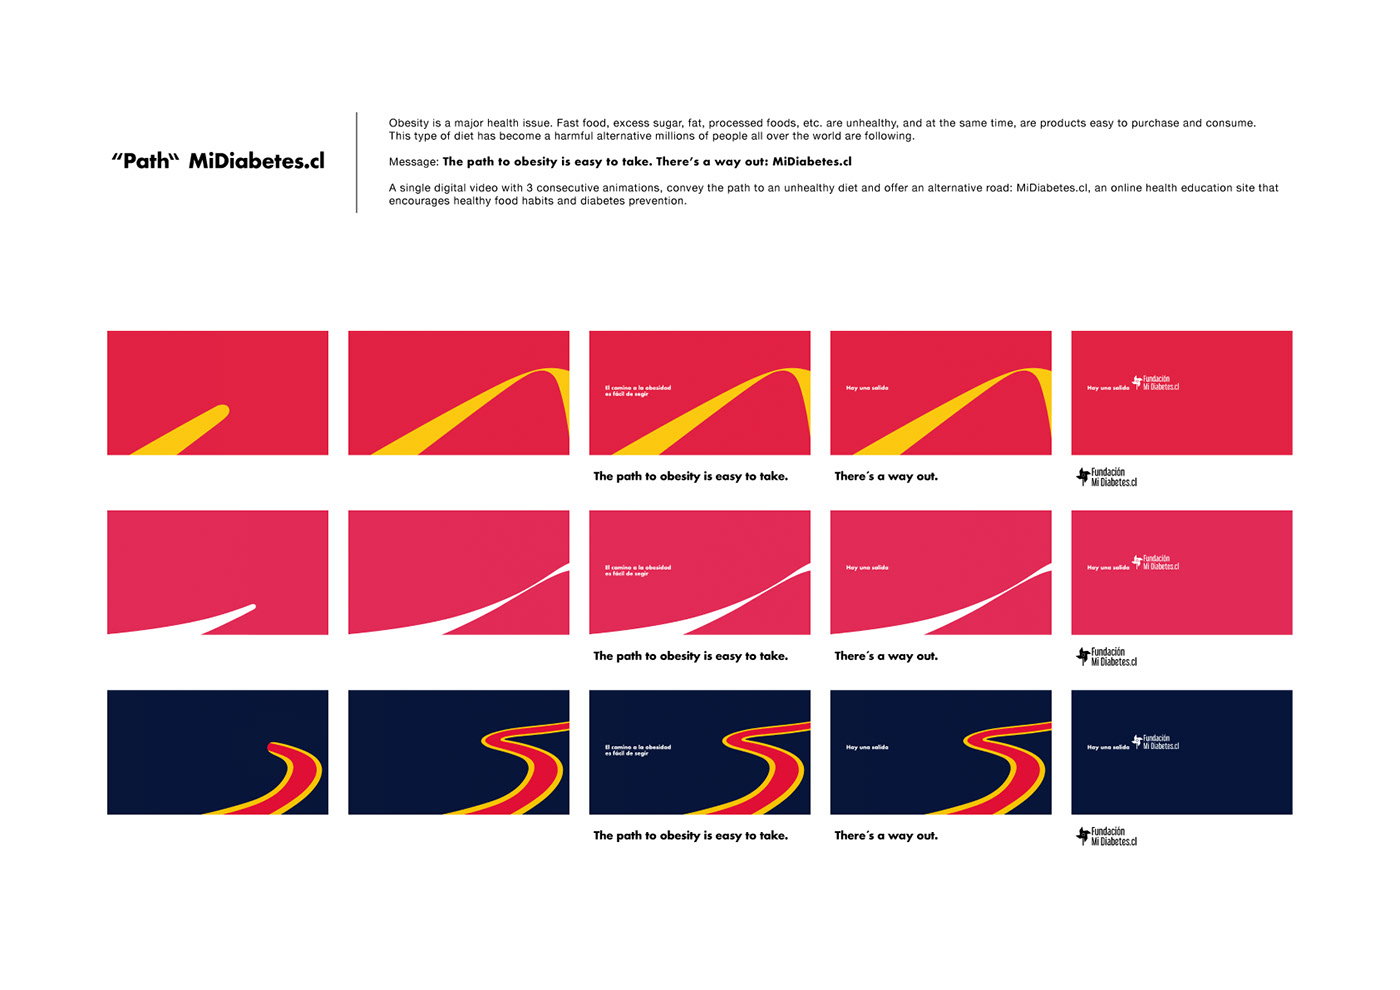 diabetes path mcdonald's Coca Cola Red Bull milka print art&copy Cannes lions